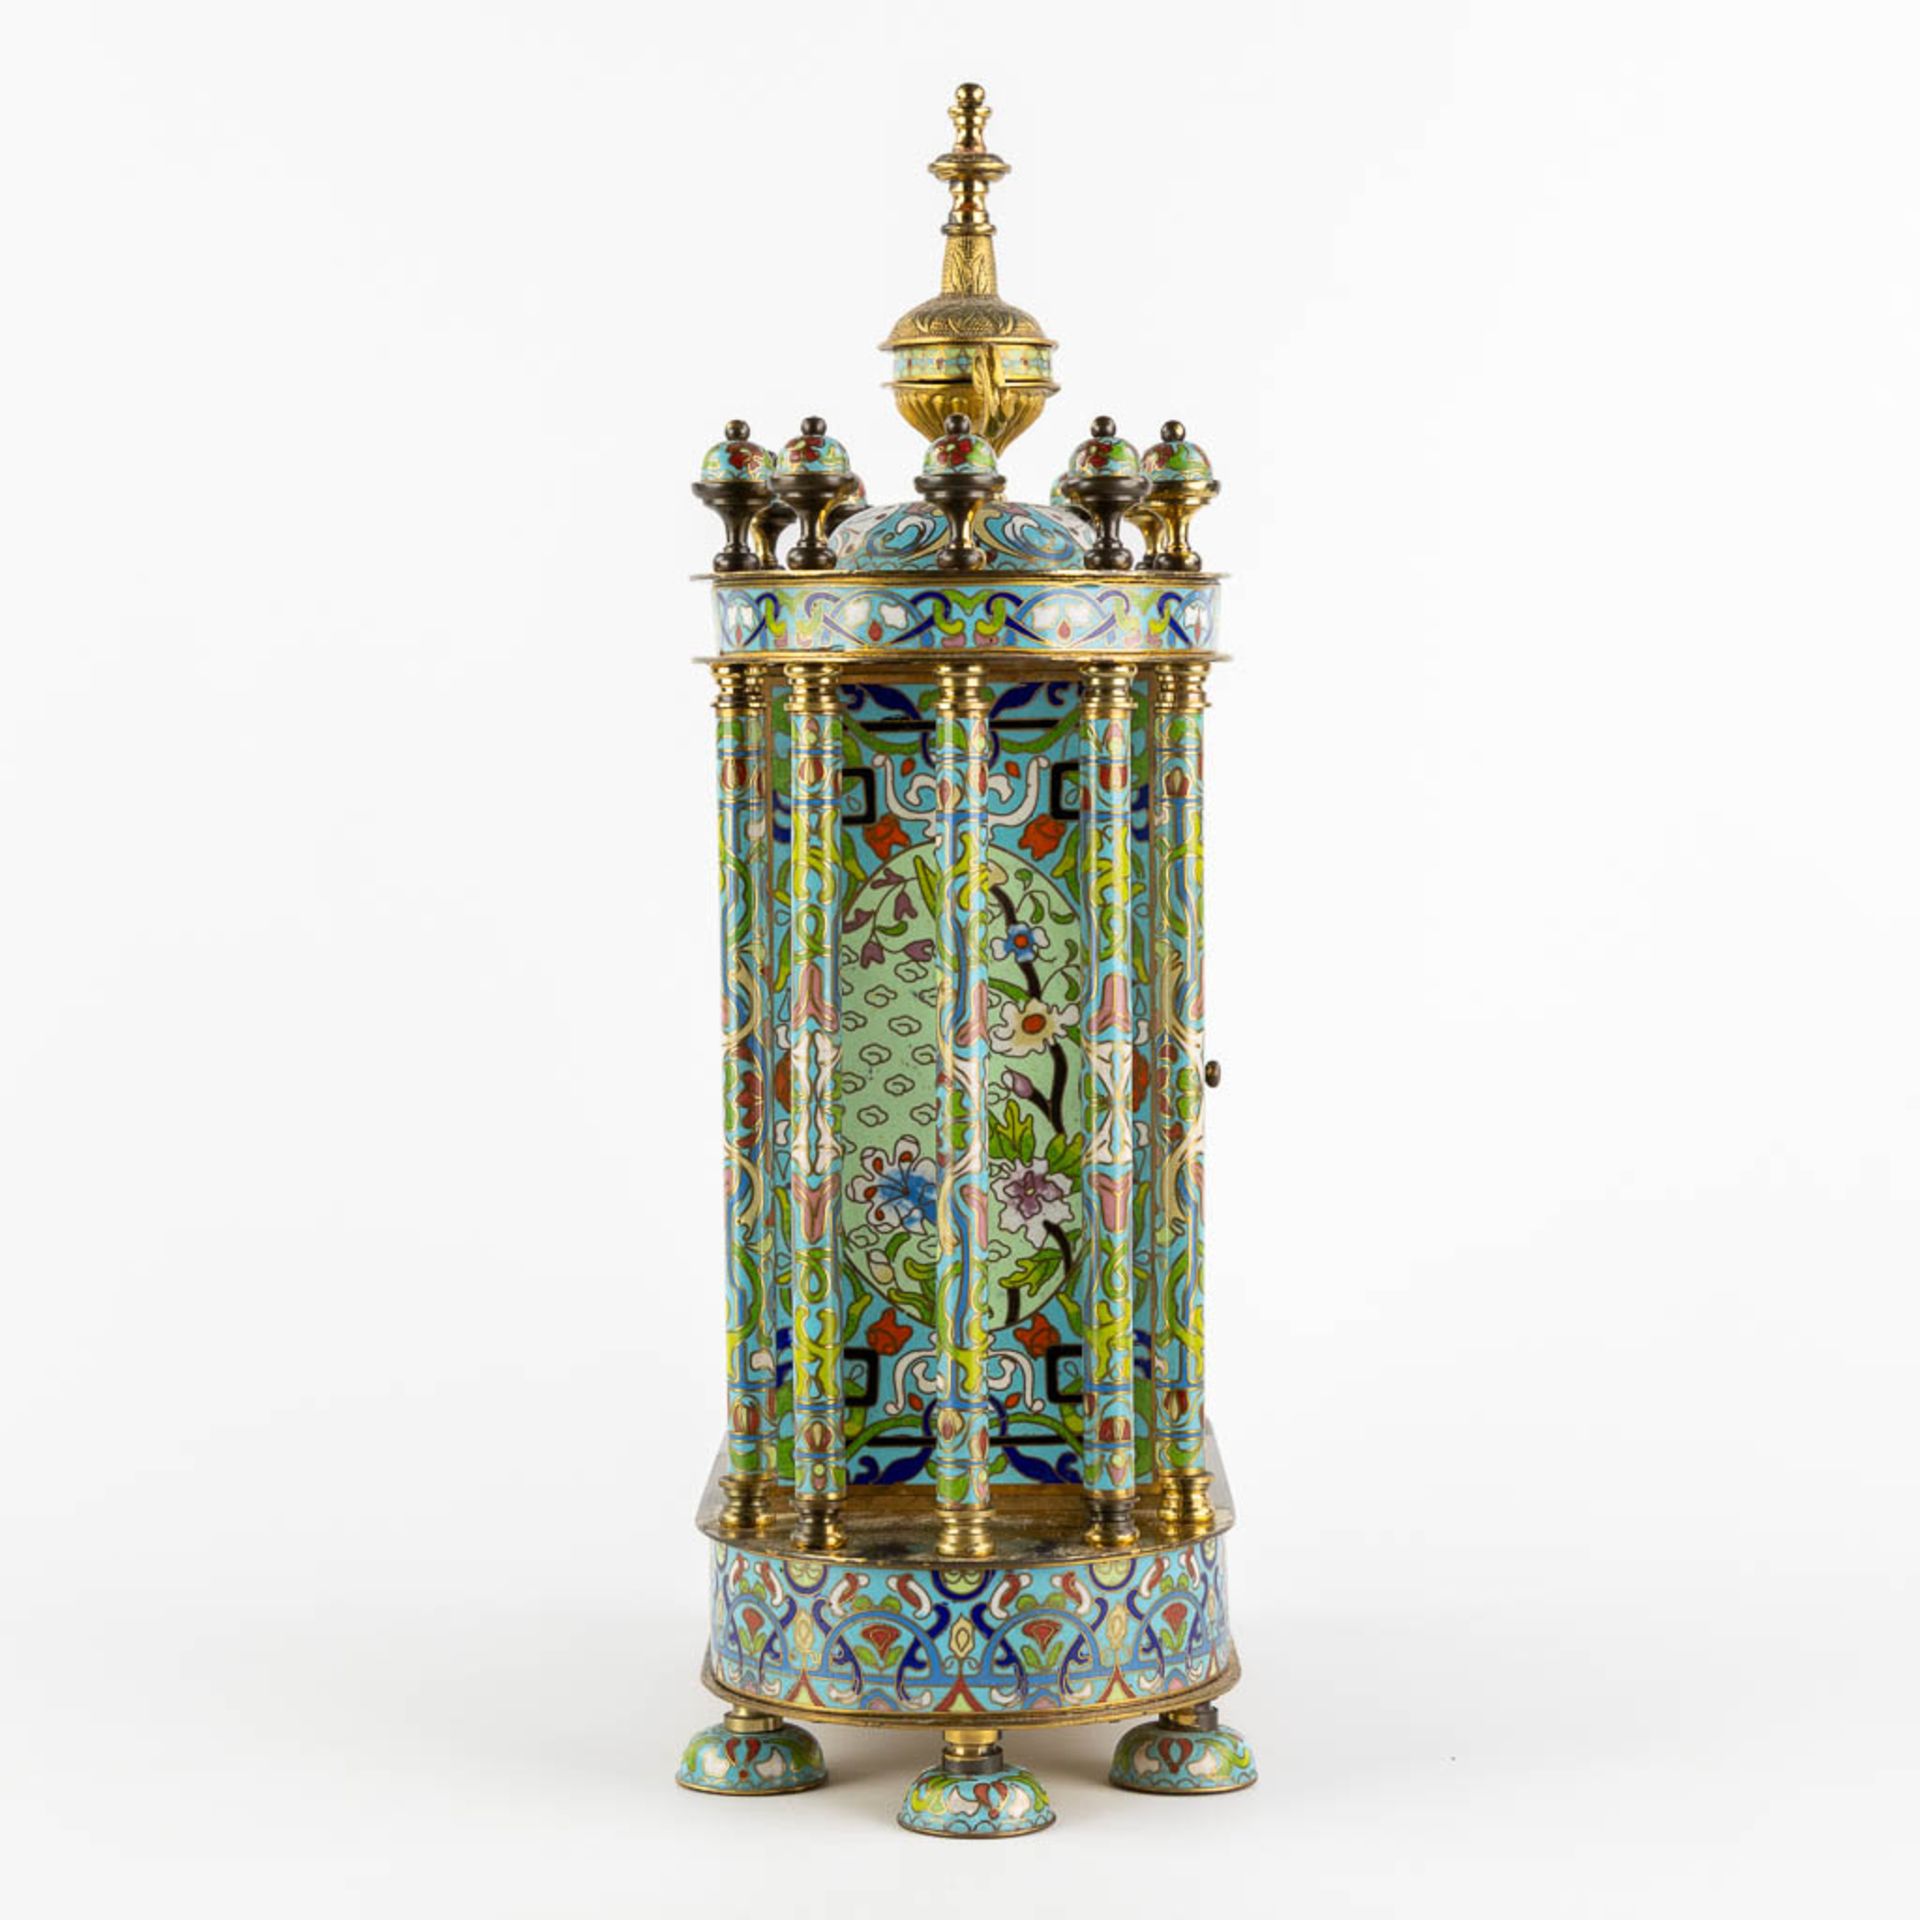 A decorative table clock, finished with cloisonné enamel. (L:15 x W:32 x H:46 cm) - Bild 6 aus 11